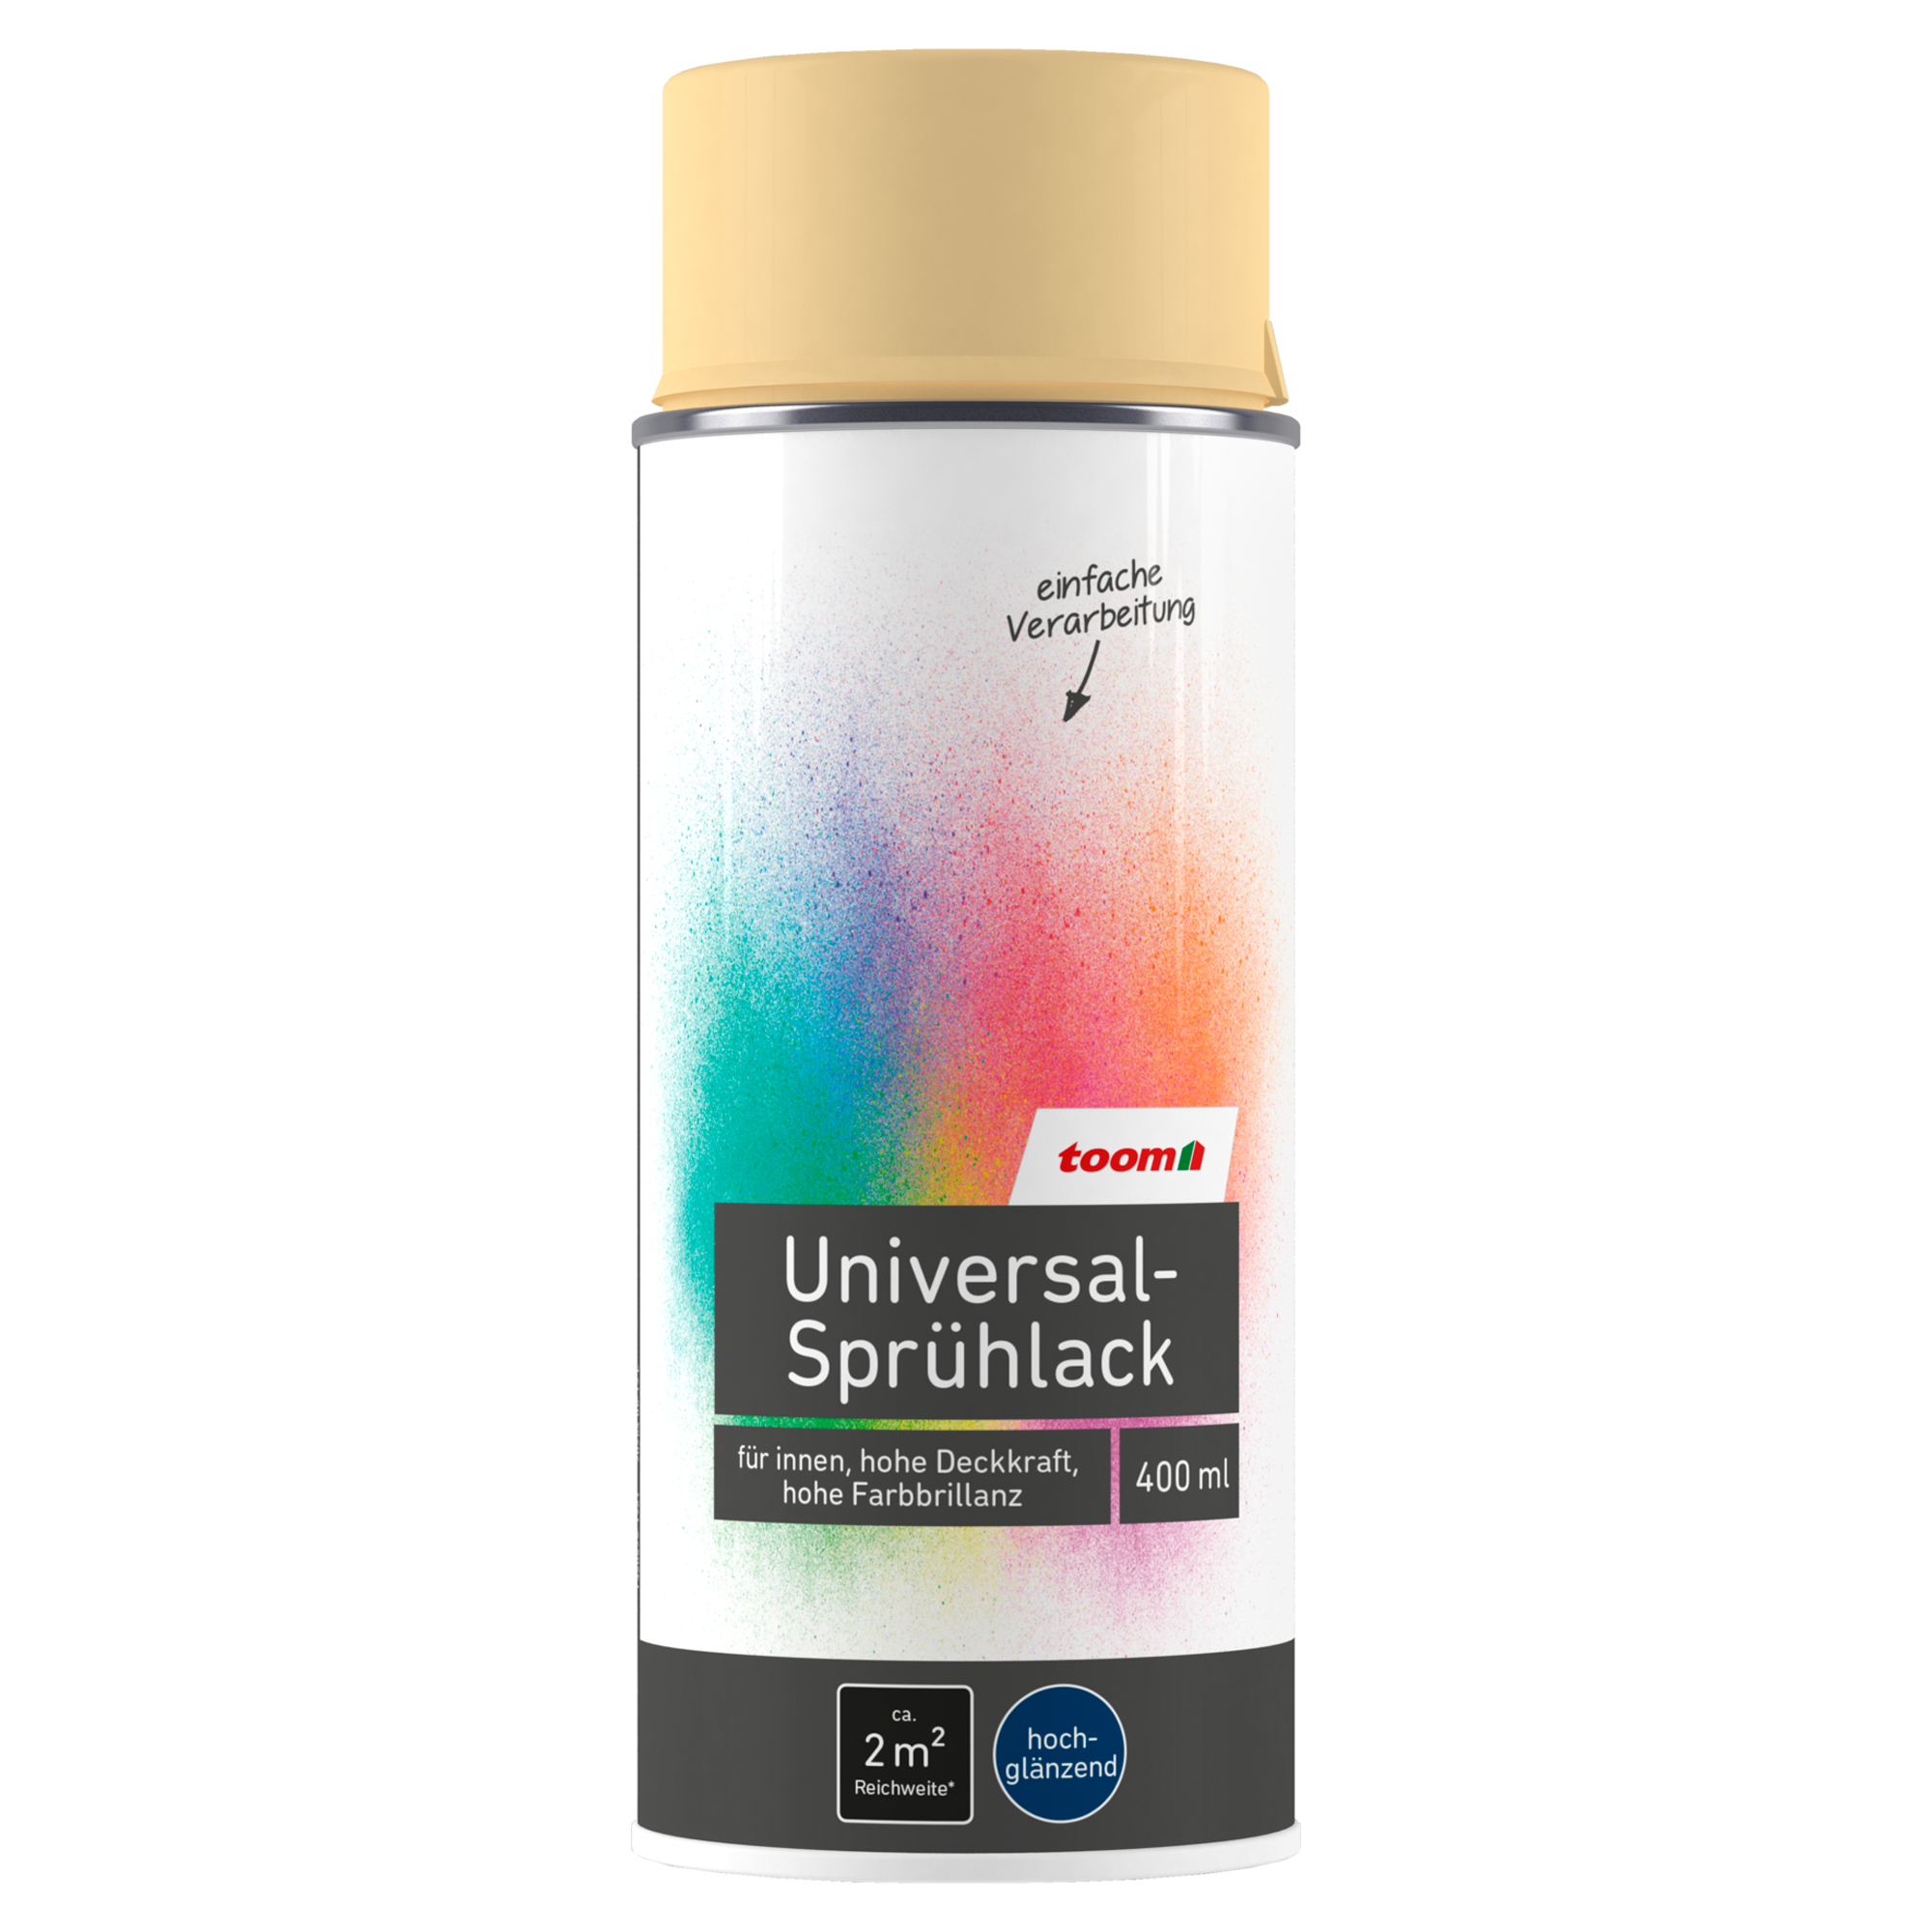 Universal-Sprühlack 'Champagner' elfenbeinfarben glänzend 400 ml + product picture